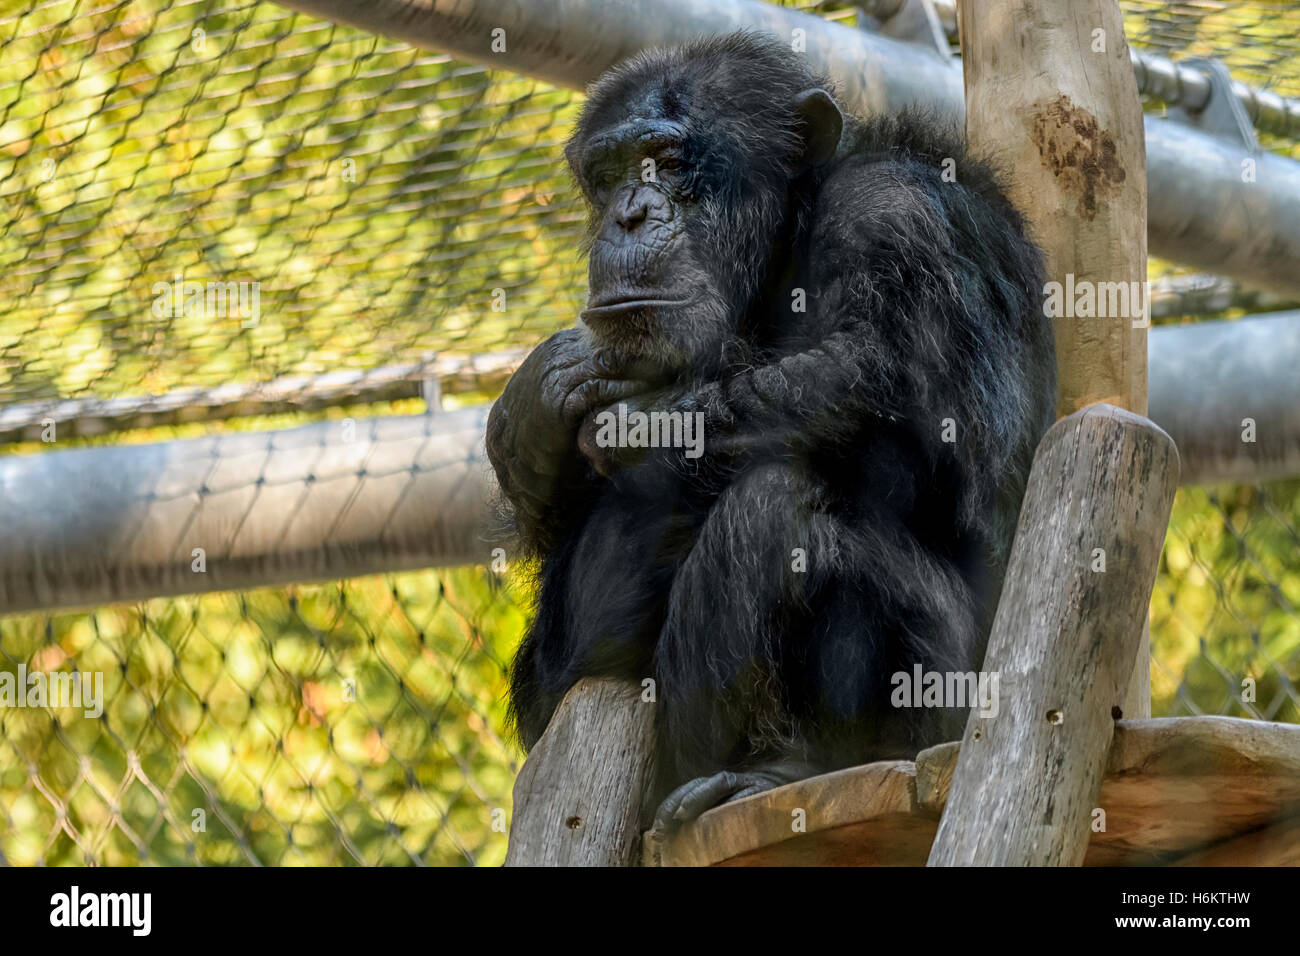 Uno scimpanzé in zoo con uno sguardo di tristezza, pensieri profondi o... Troppi i modi di interpretare. Foto Stock